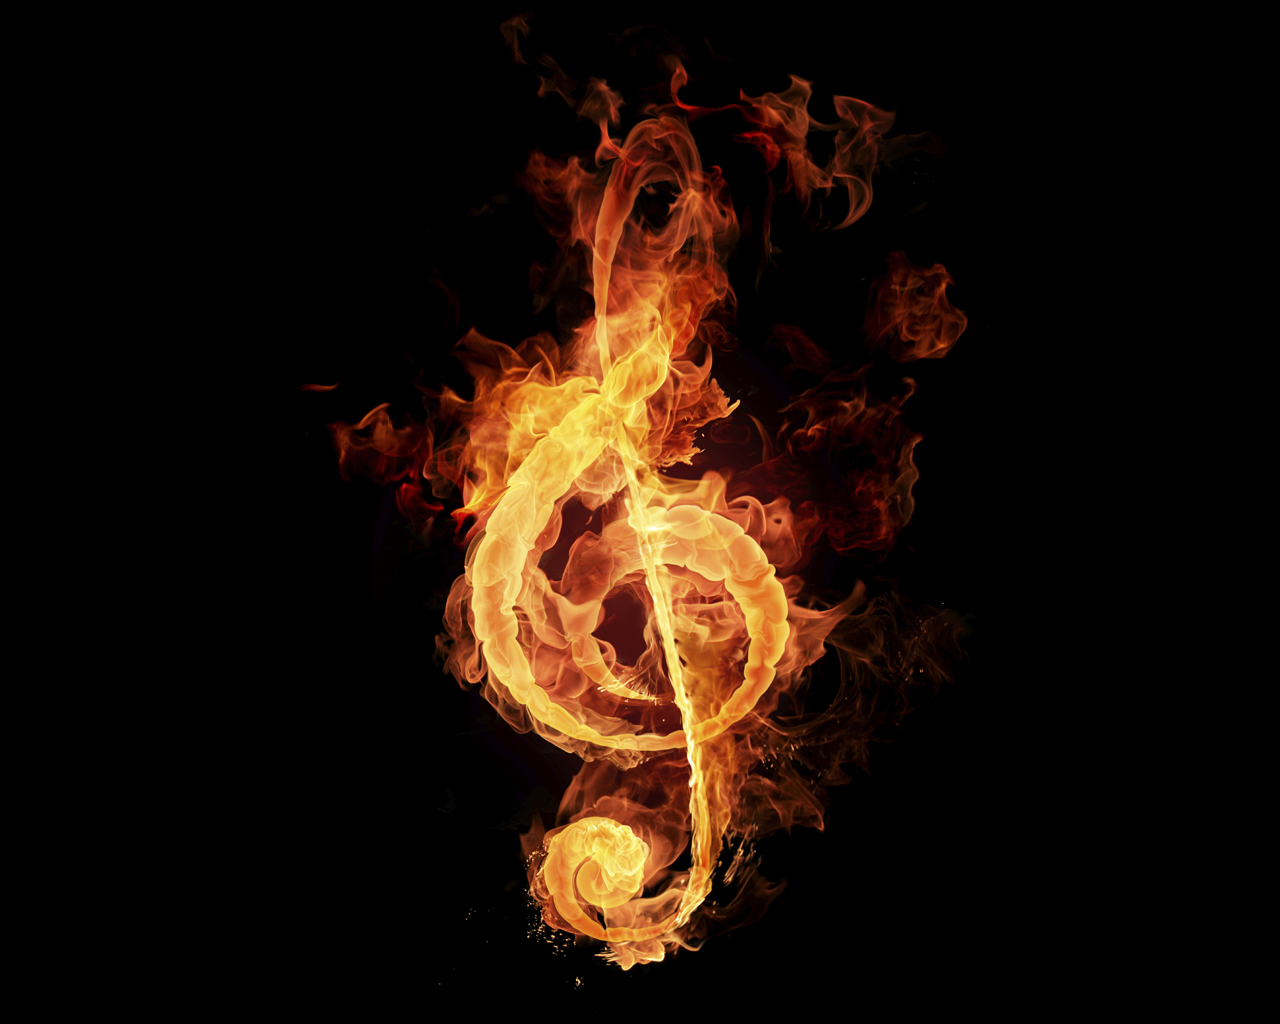 Fire Musical Design Hq Desktop S Wallpaper